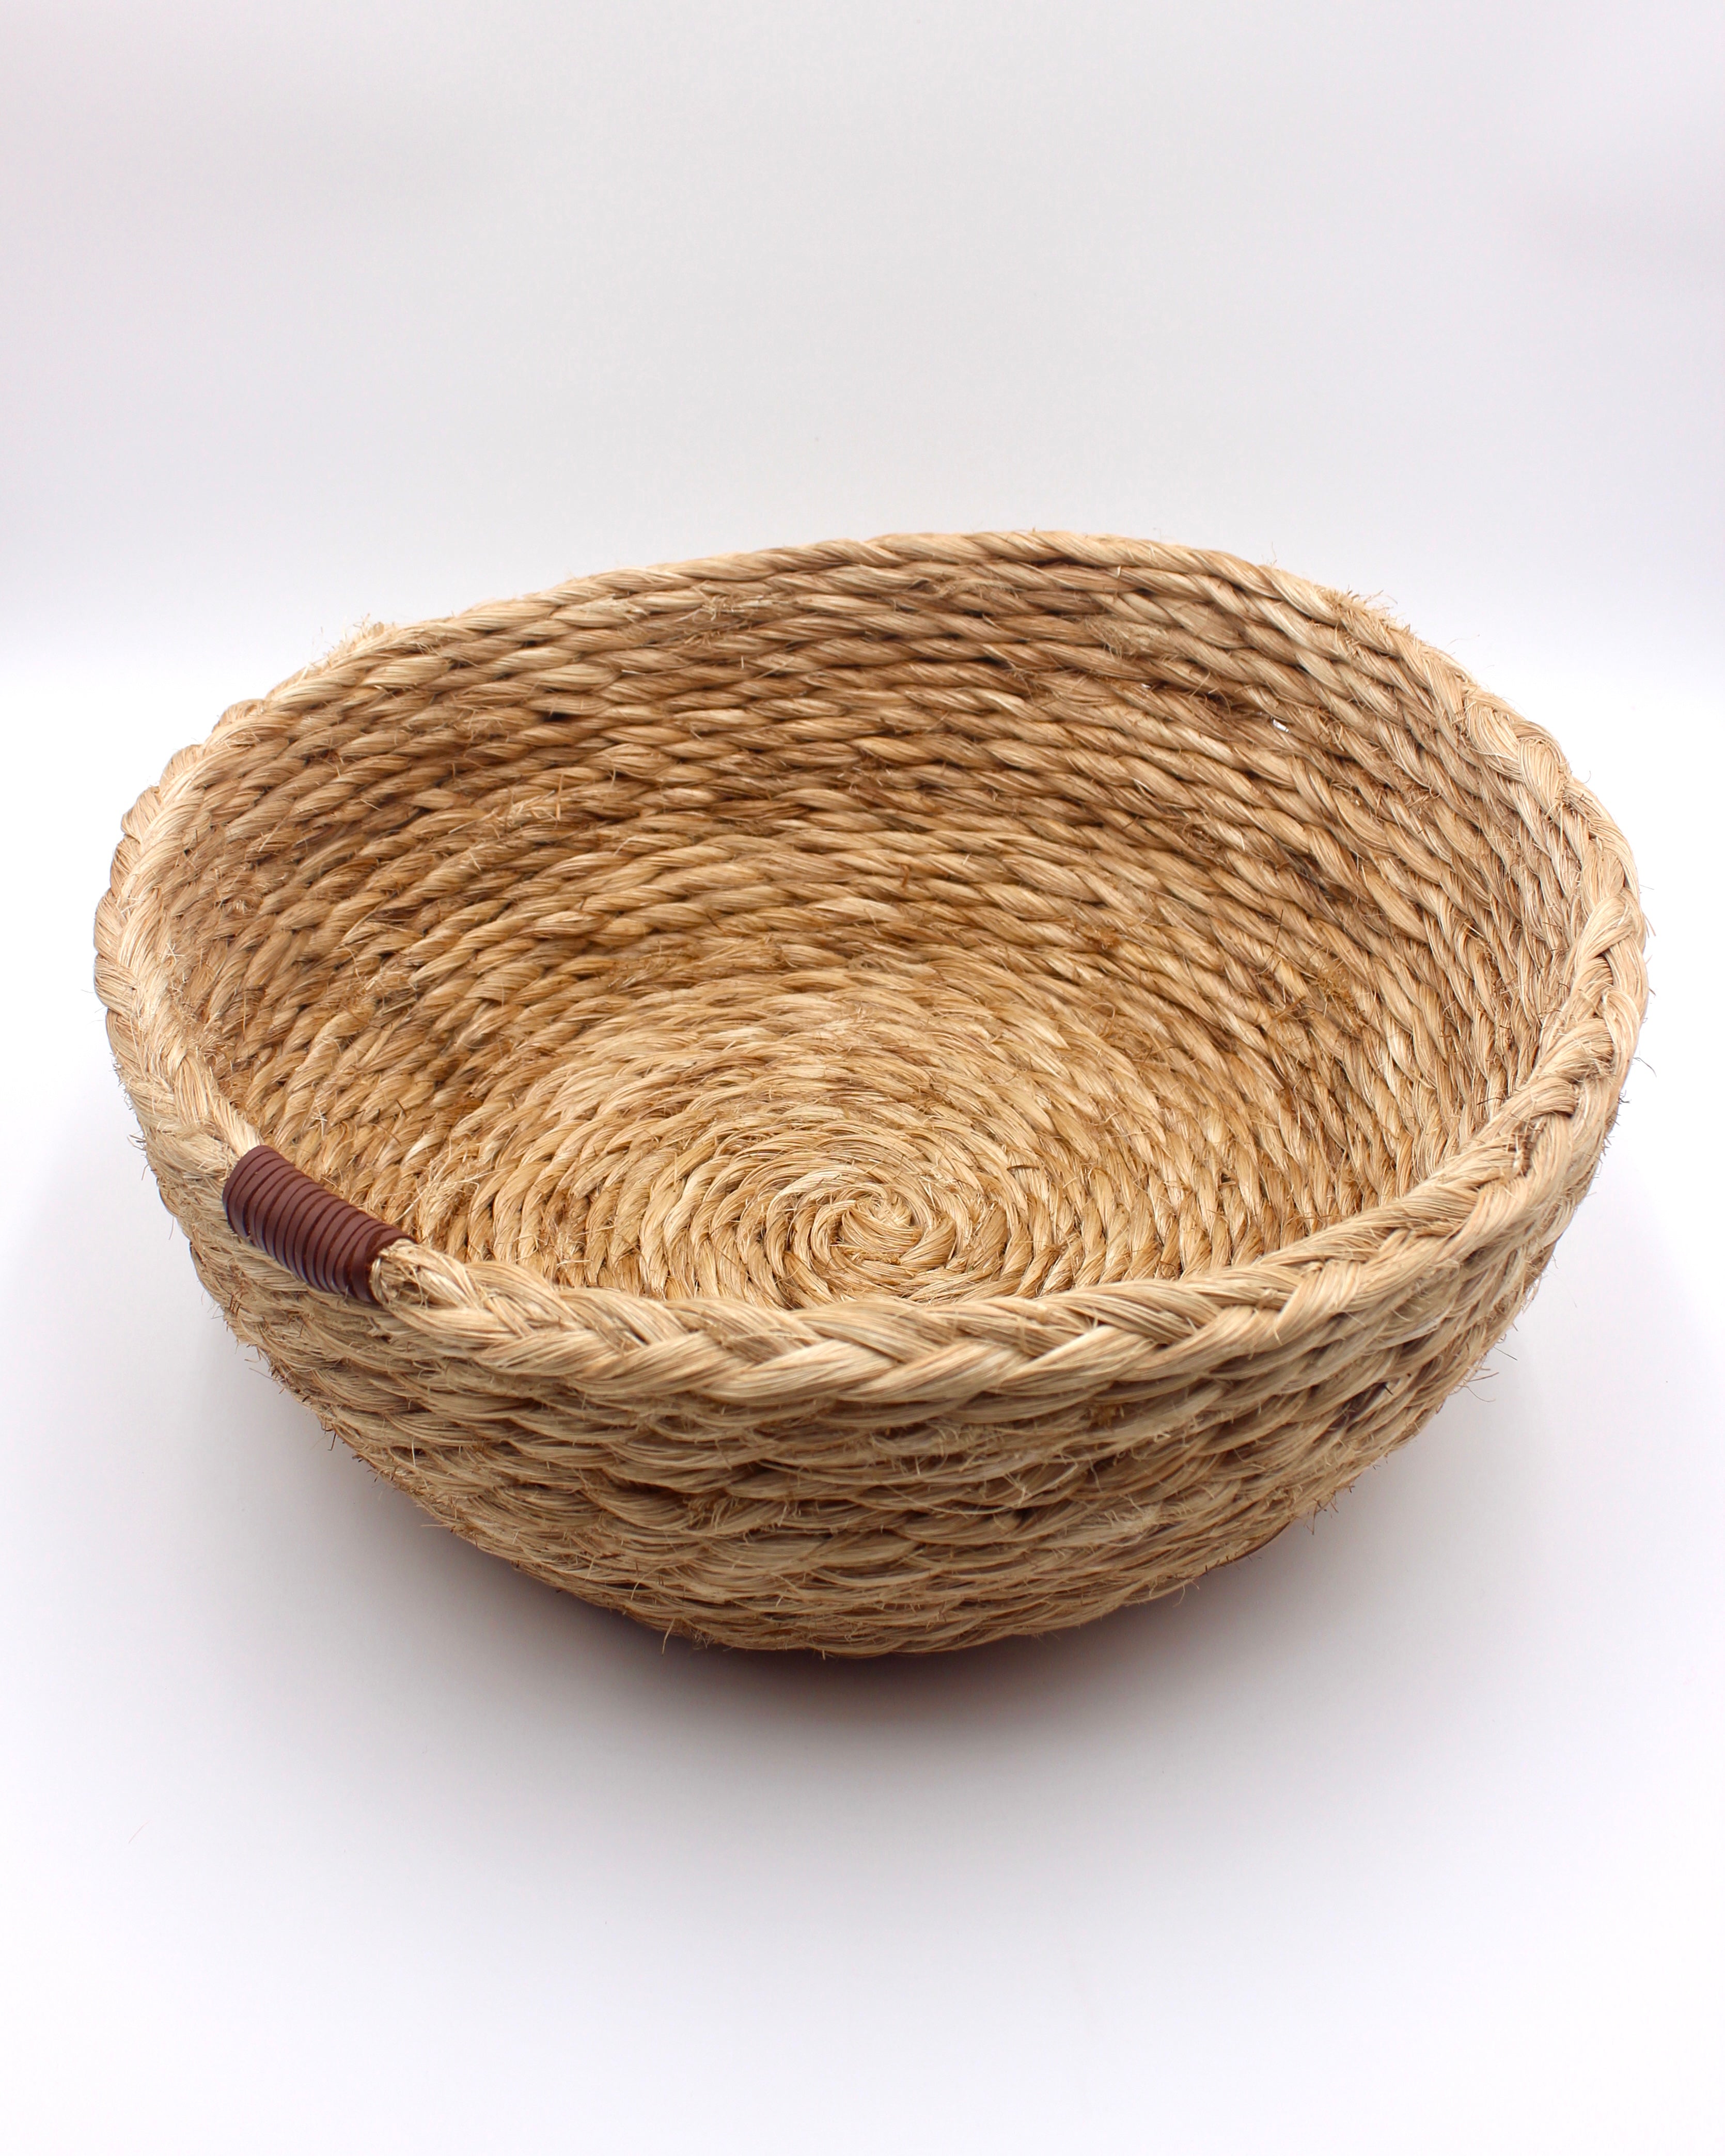 Woven Round Basket